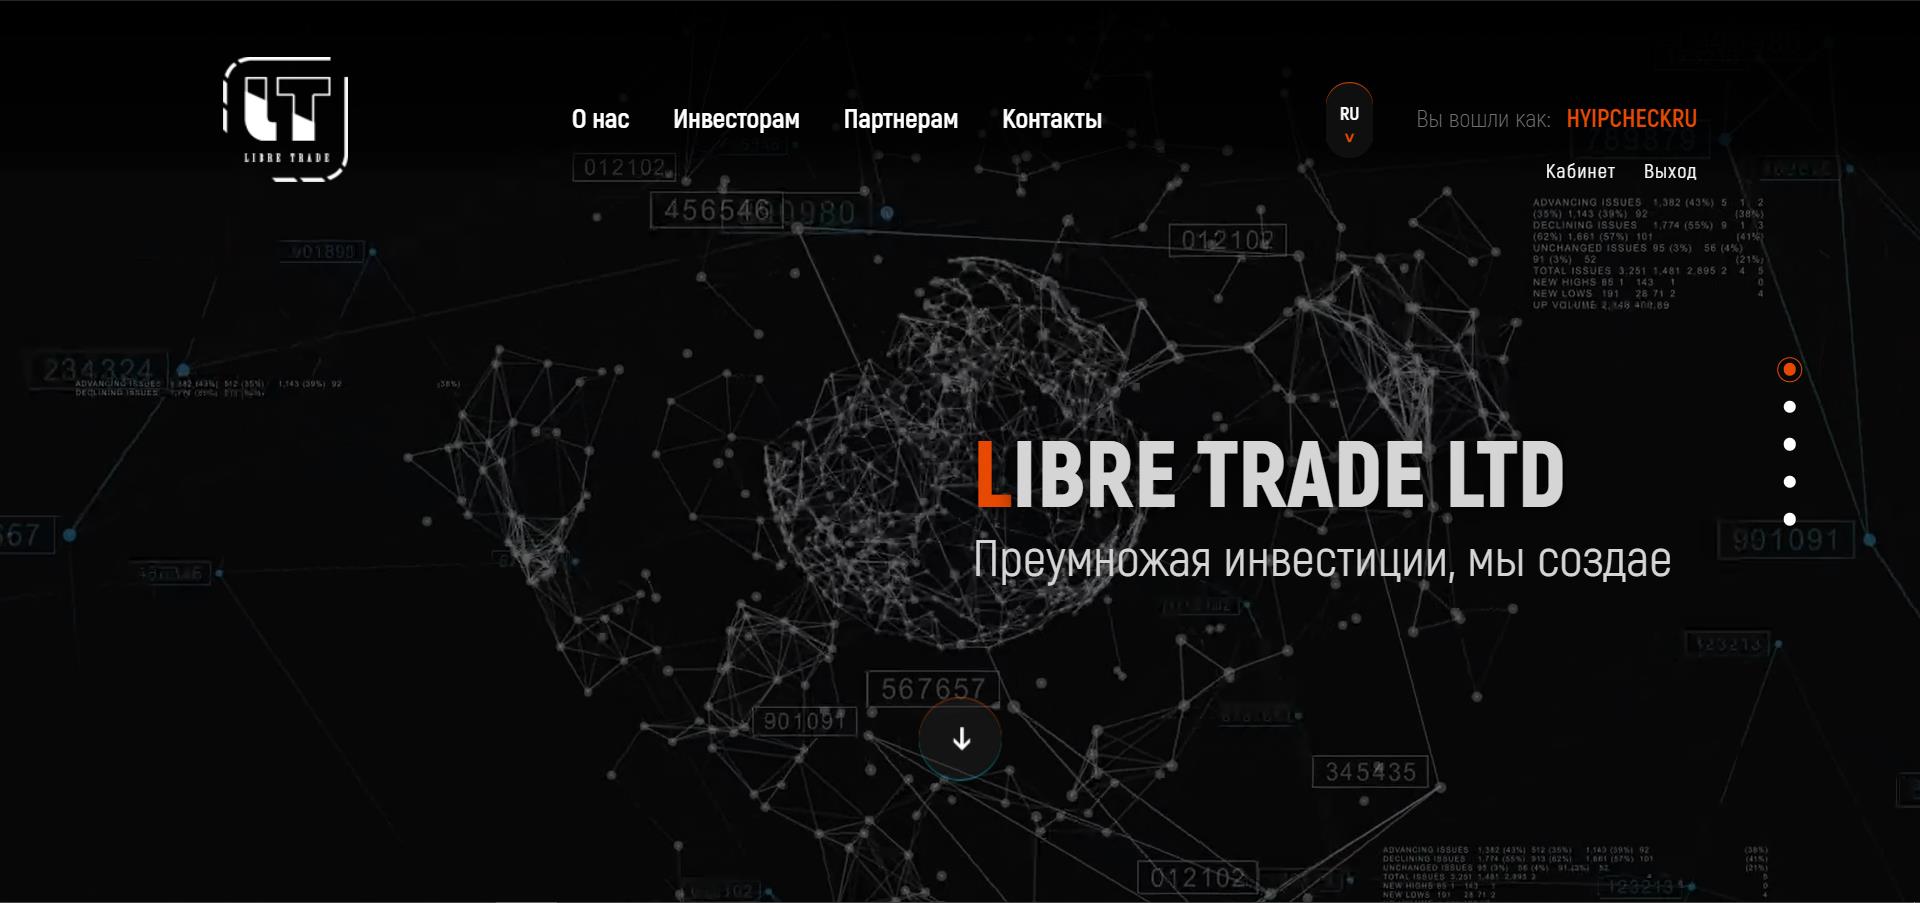 Libre Trade